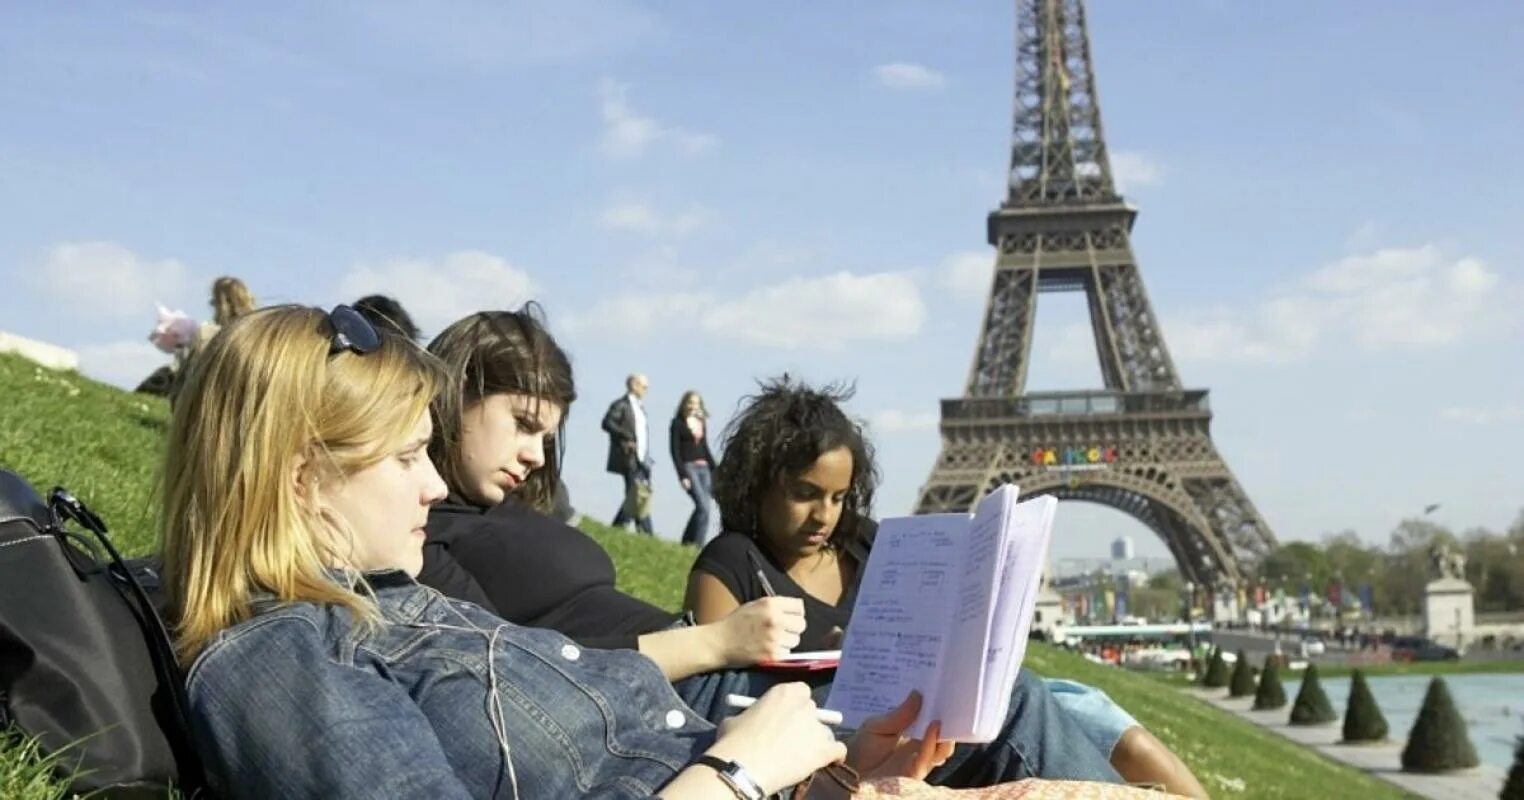 Serie en francais. Образование во Франции. Студенты Франции. Профессиональное образование во Франции. Школа во Франции.